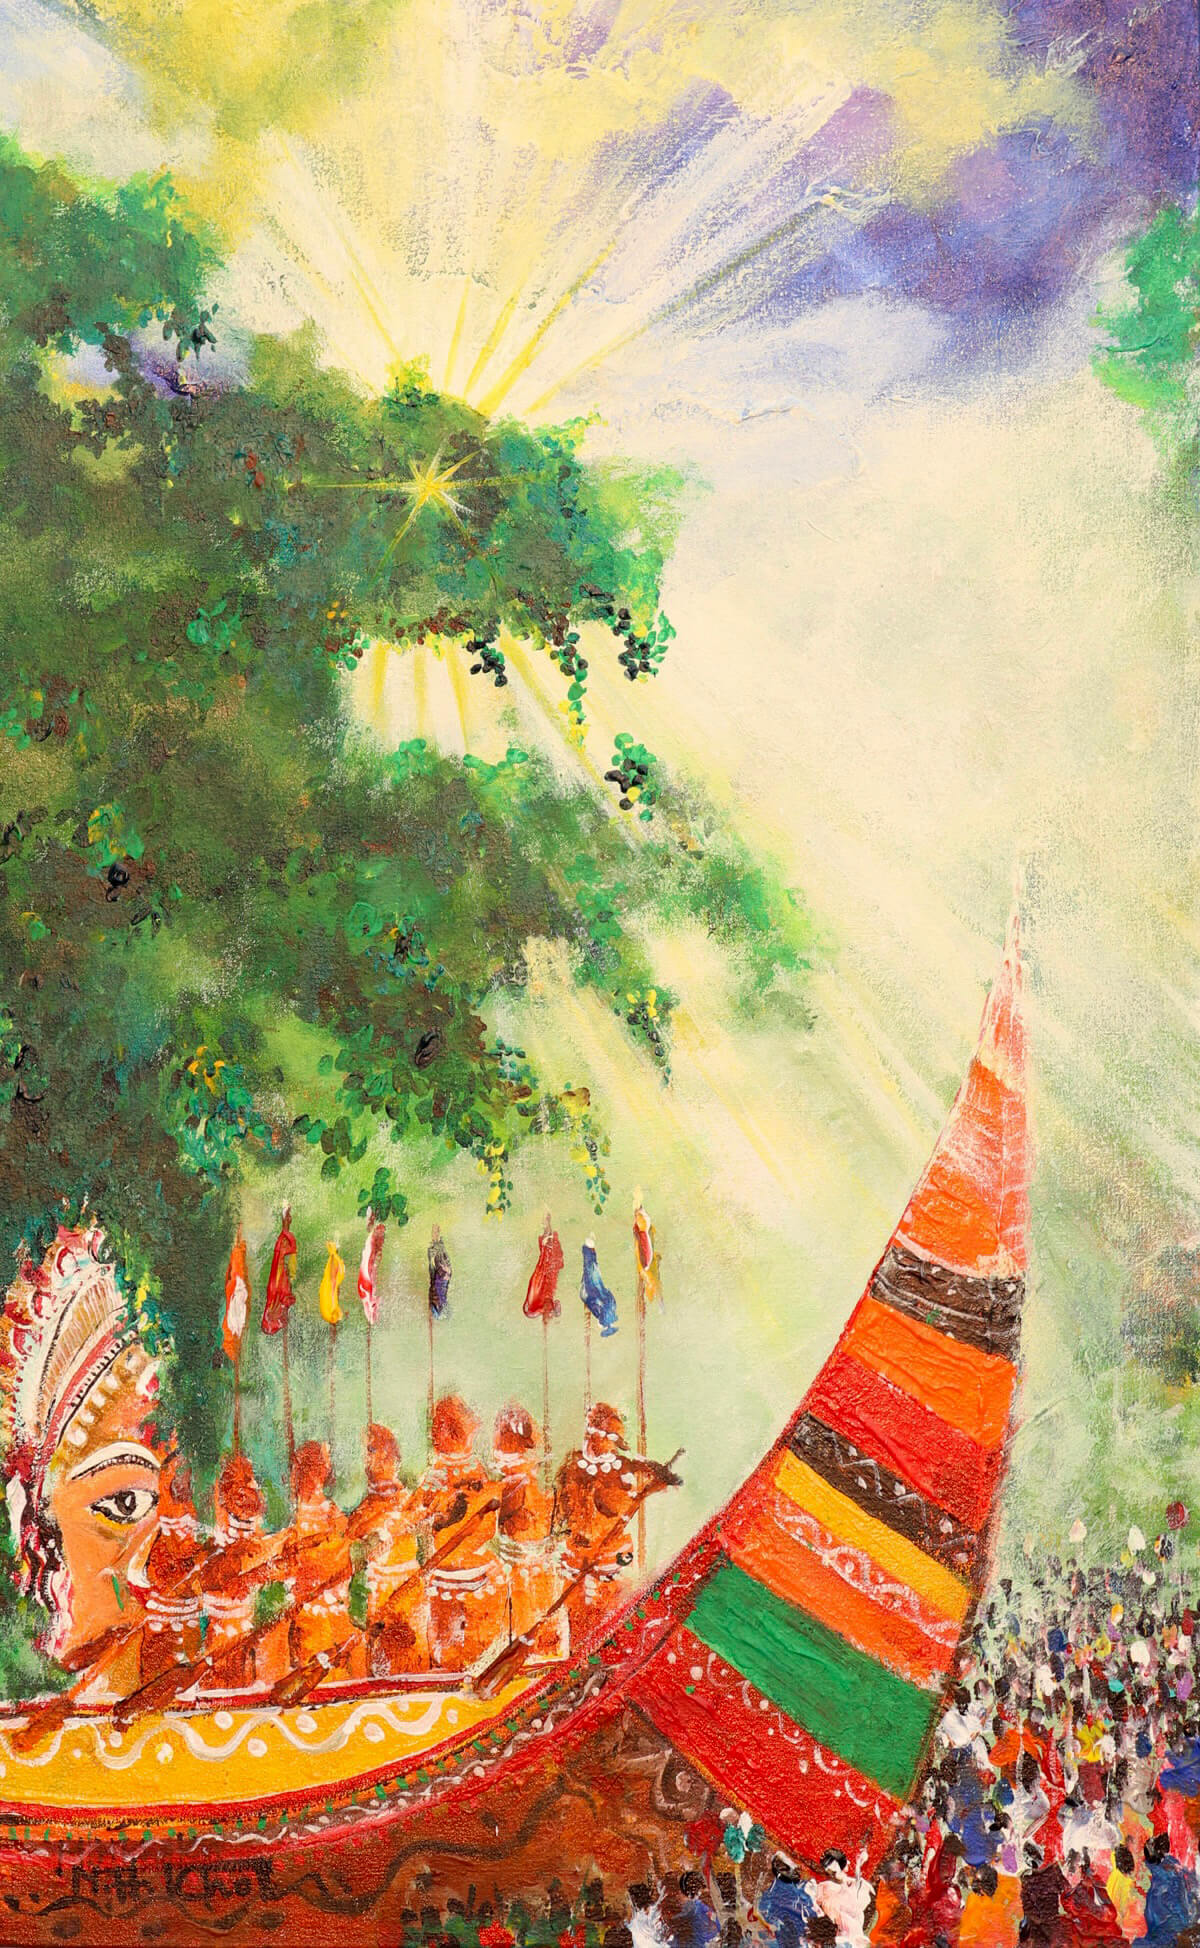 MH Khokon paintings Baishakh Colors of Festival in Bangaldesh